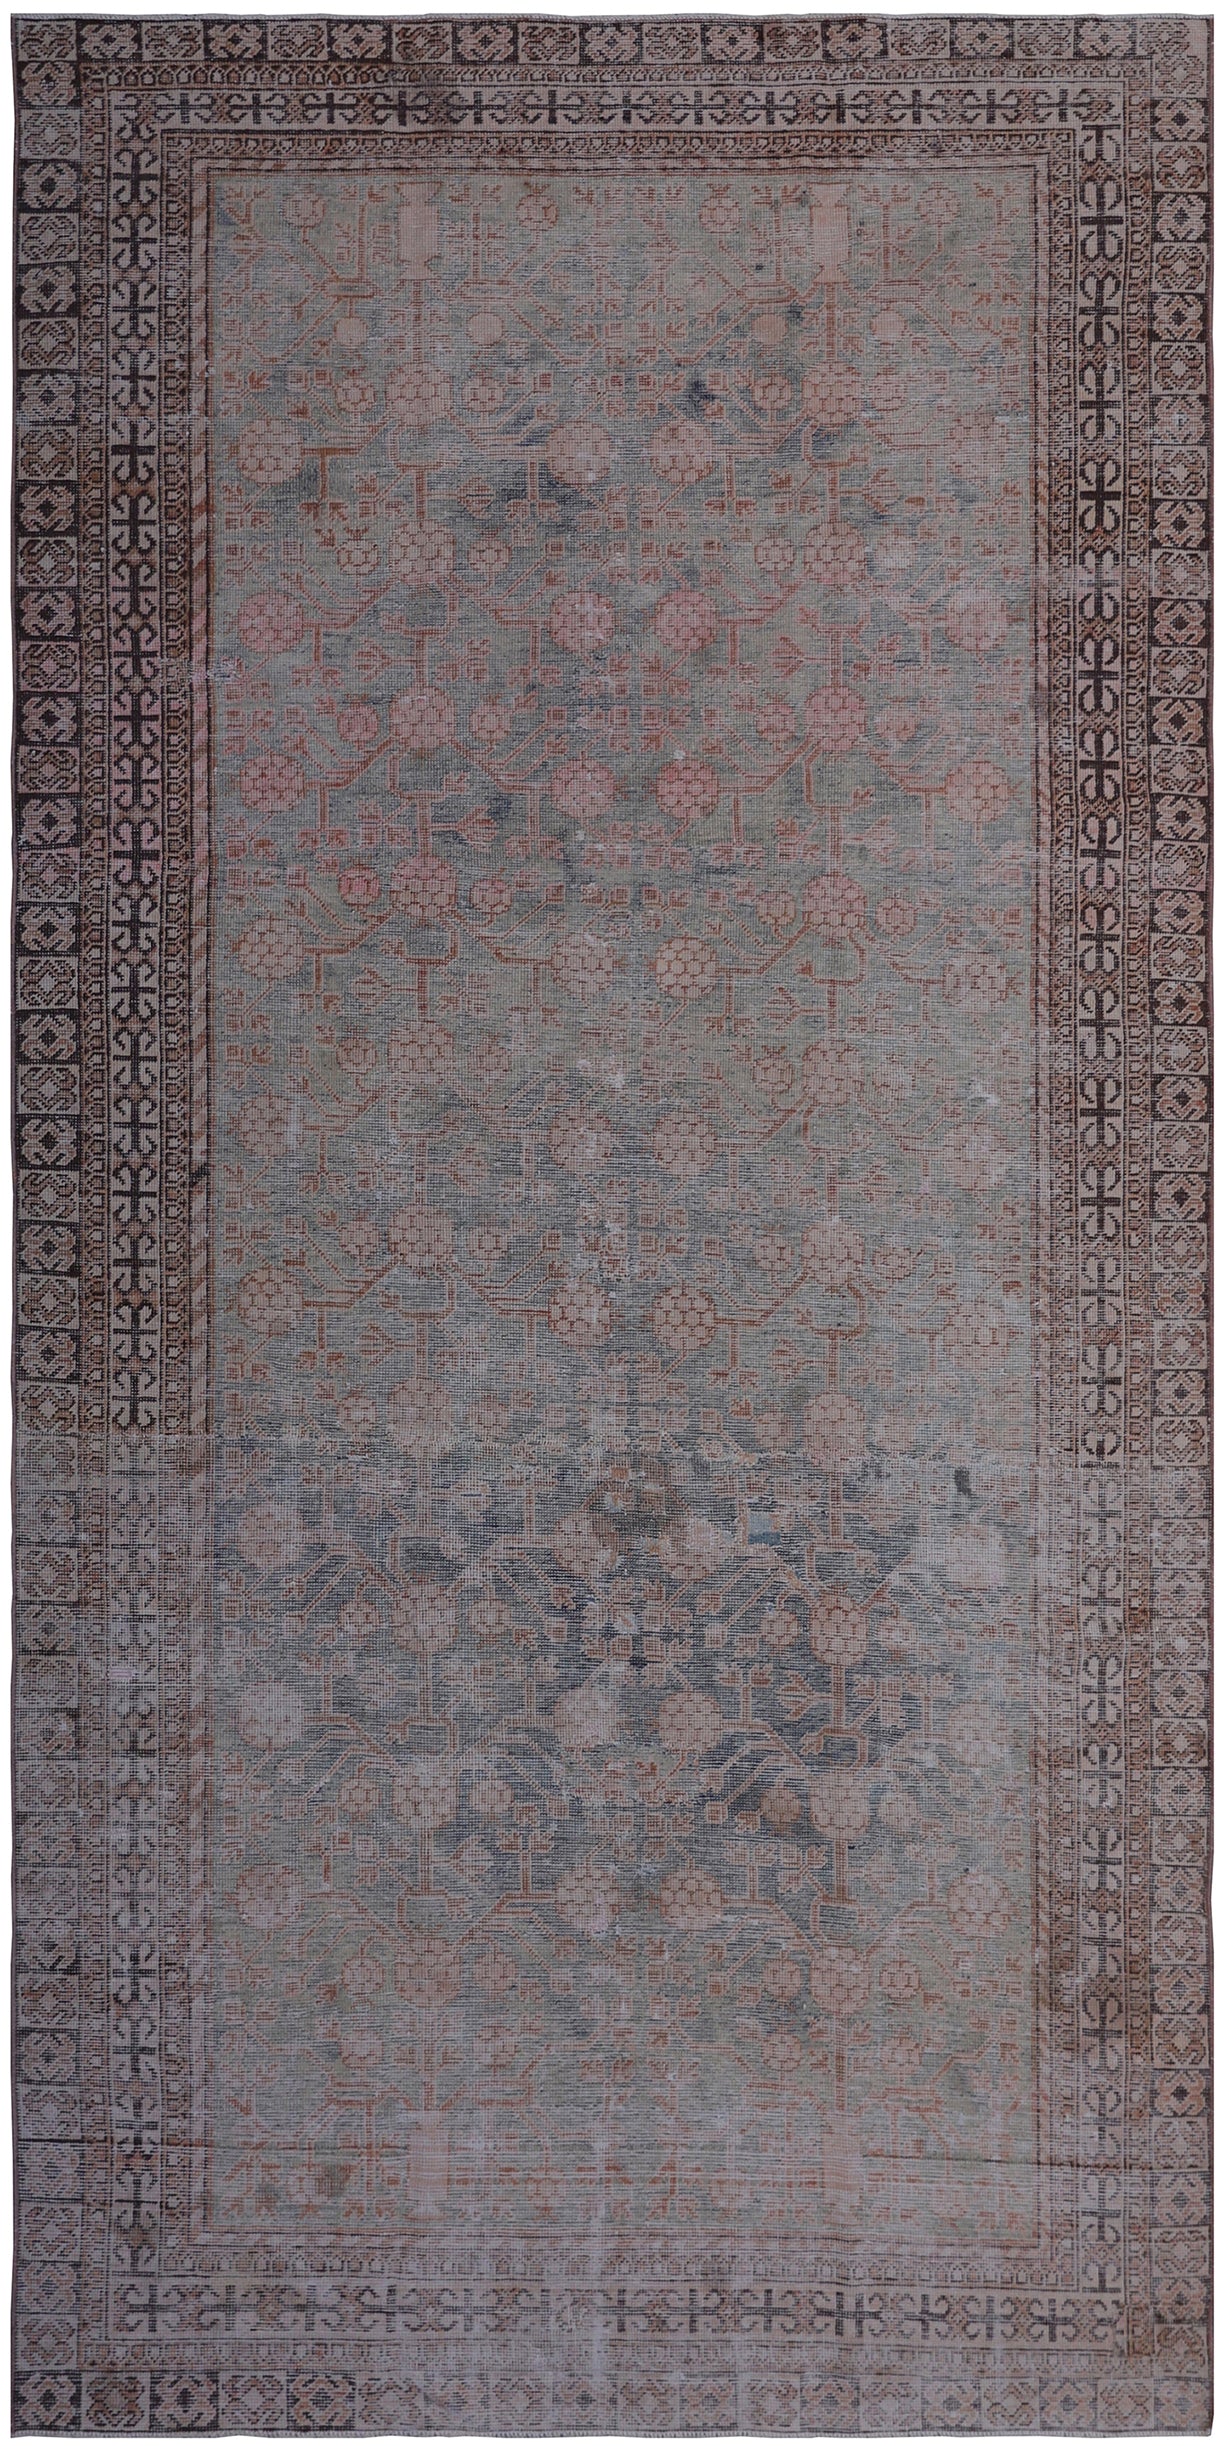 4'x9' Vintage Antique Samarkand Traditional Rug